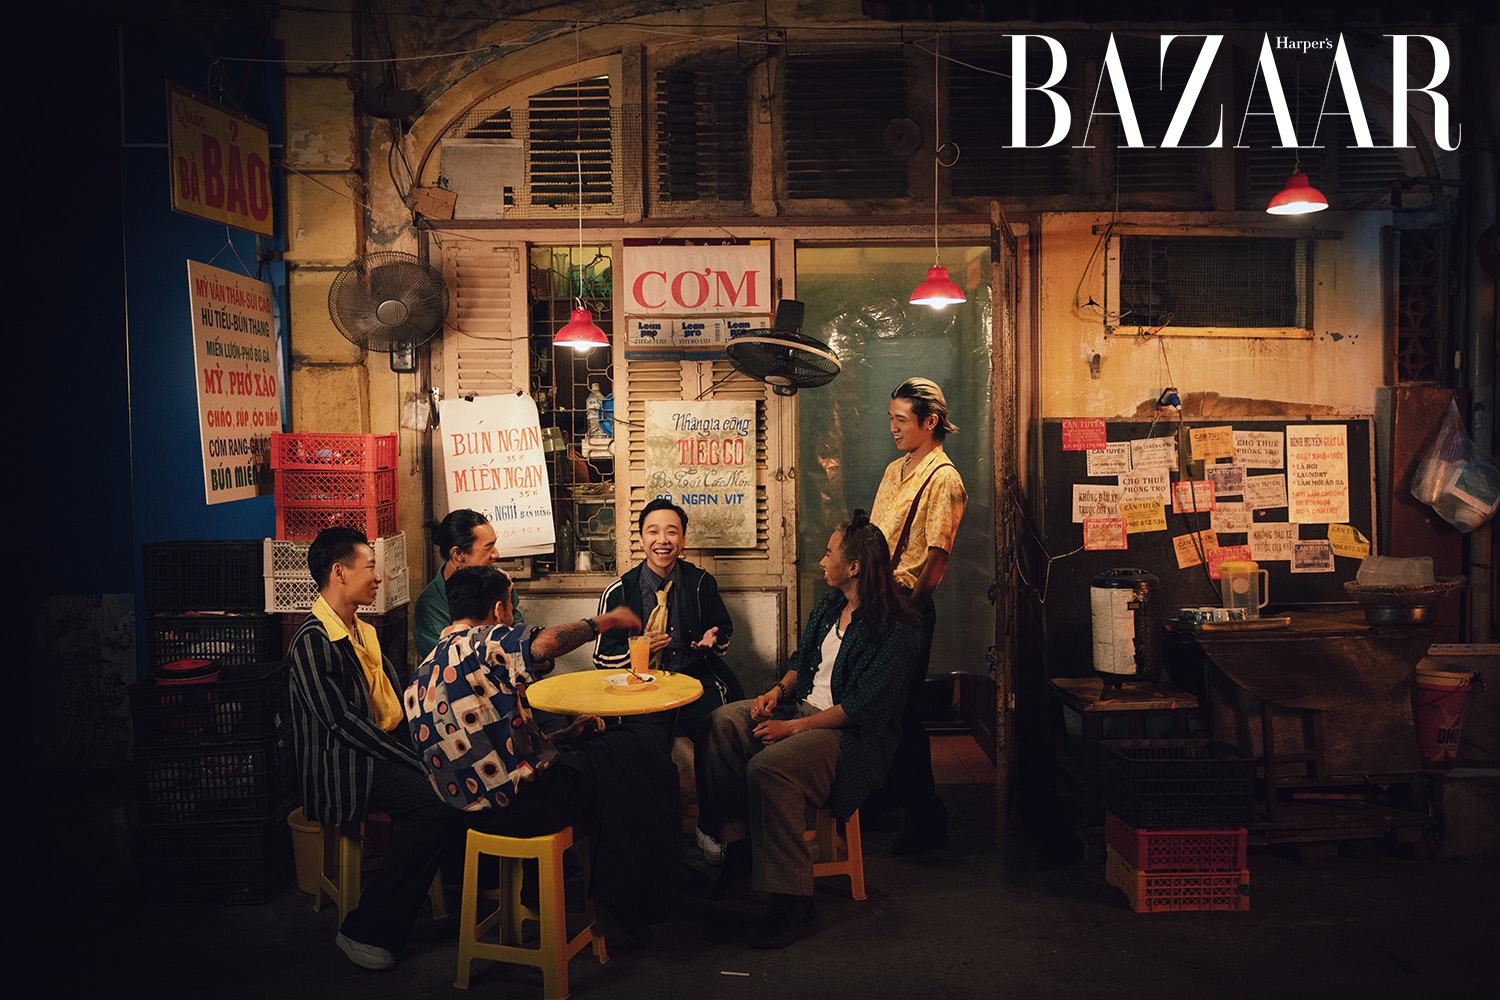 Harper's Bazaar_Madihu ra mắt MV Để Anh Không_06